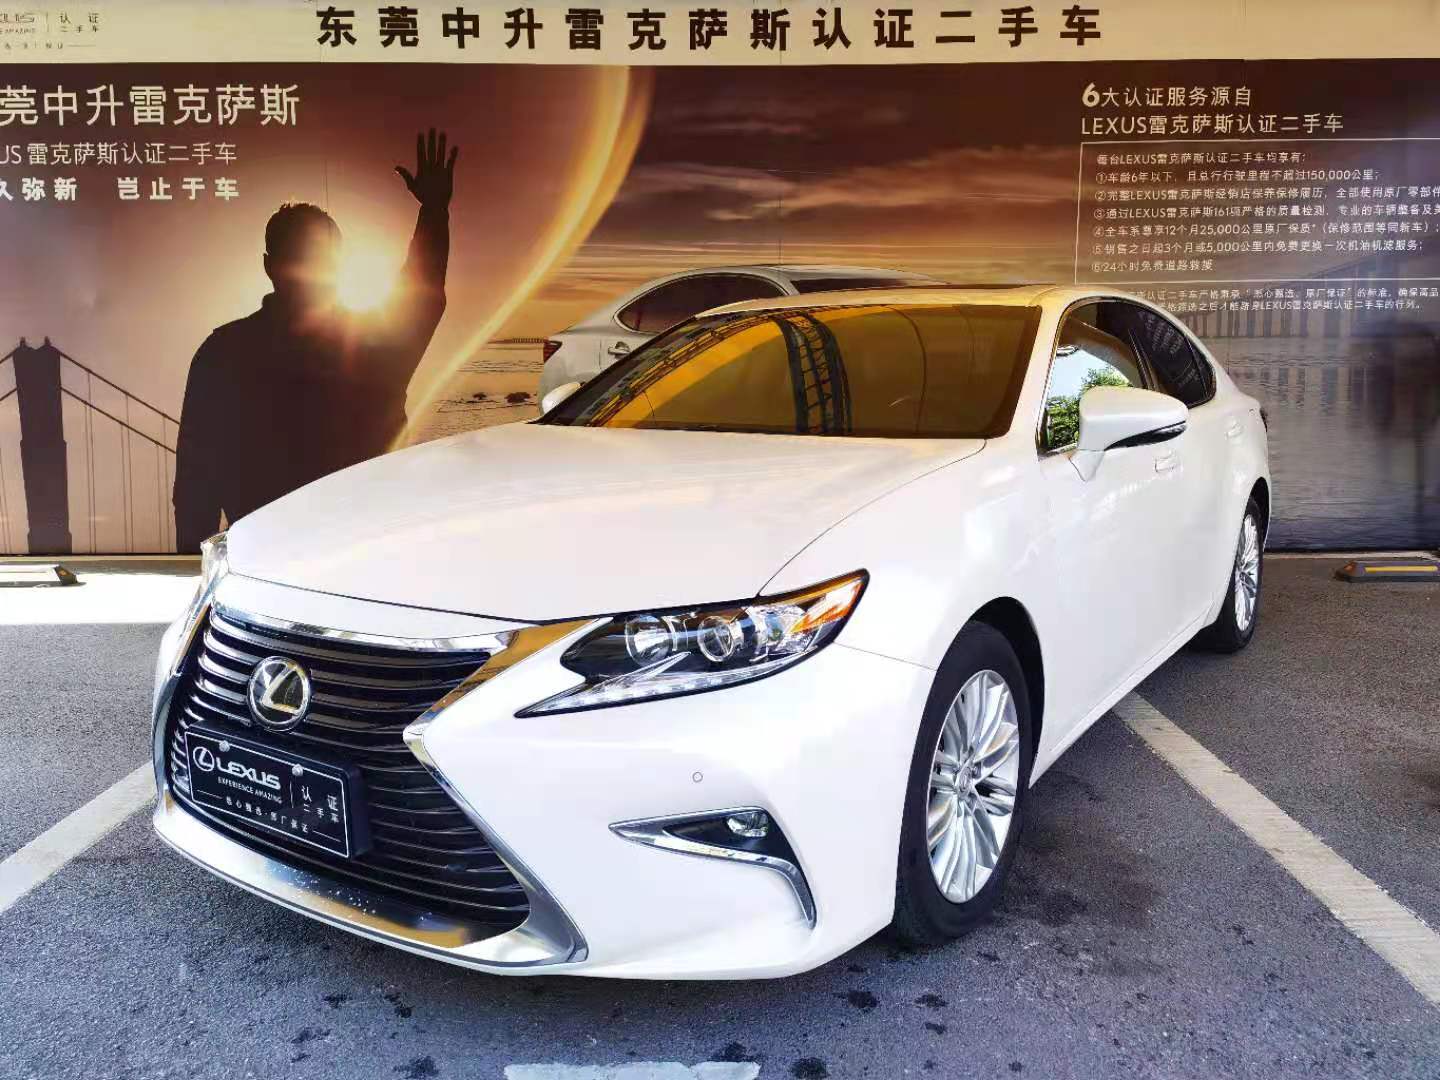 东莞中升雷克萨斯汽车销售服务有限公司 Lexus雷克萨斯认证二手车